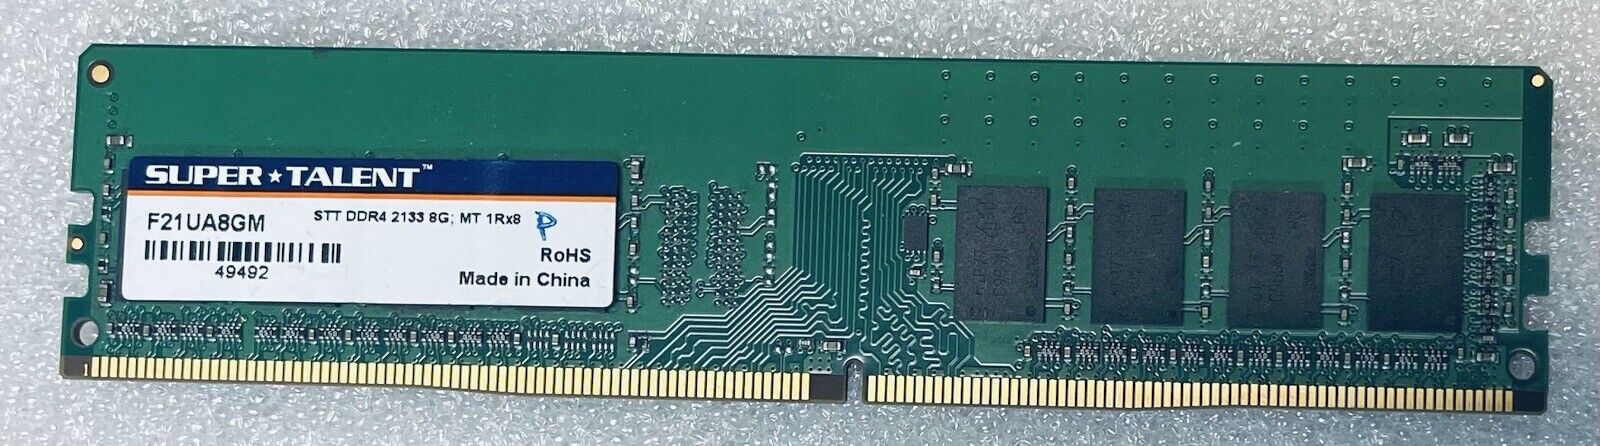 Super Talent 8GB DDR4 PC4-2133 F21UA8GM Desktop RAM